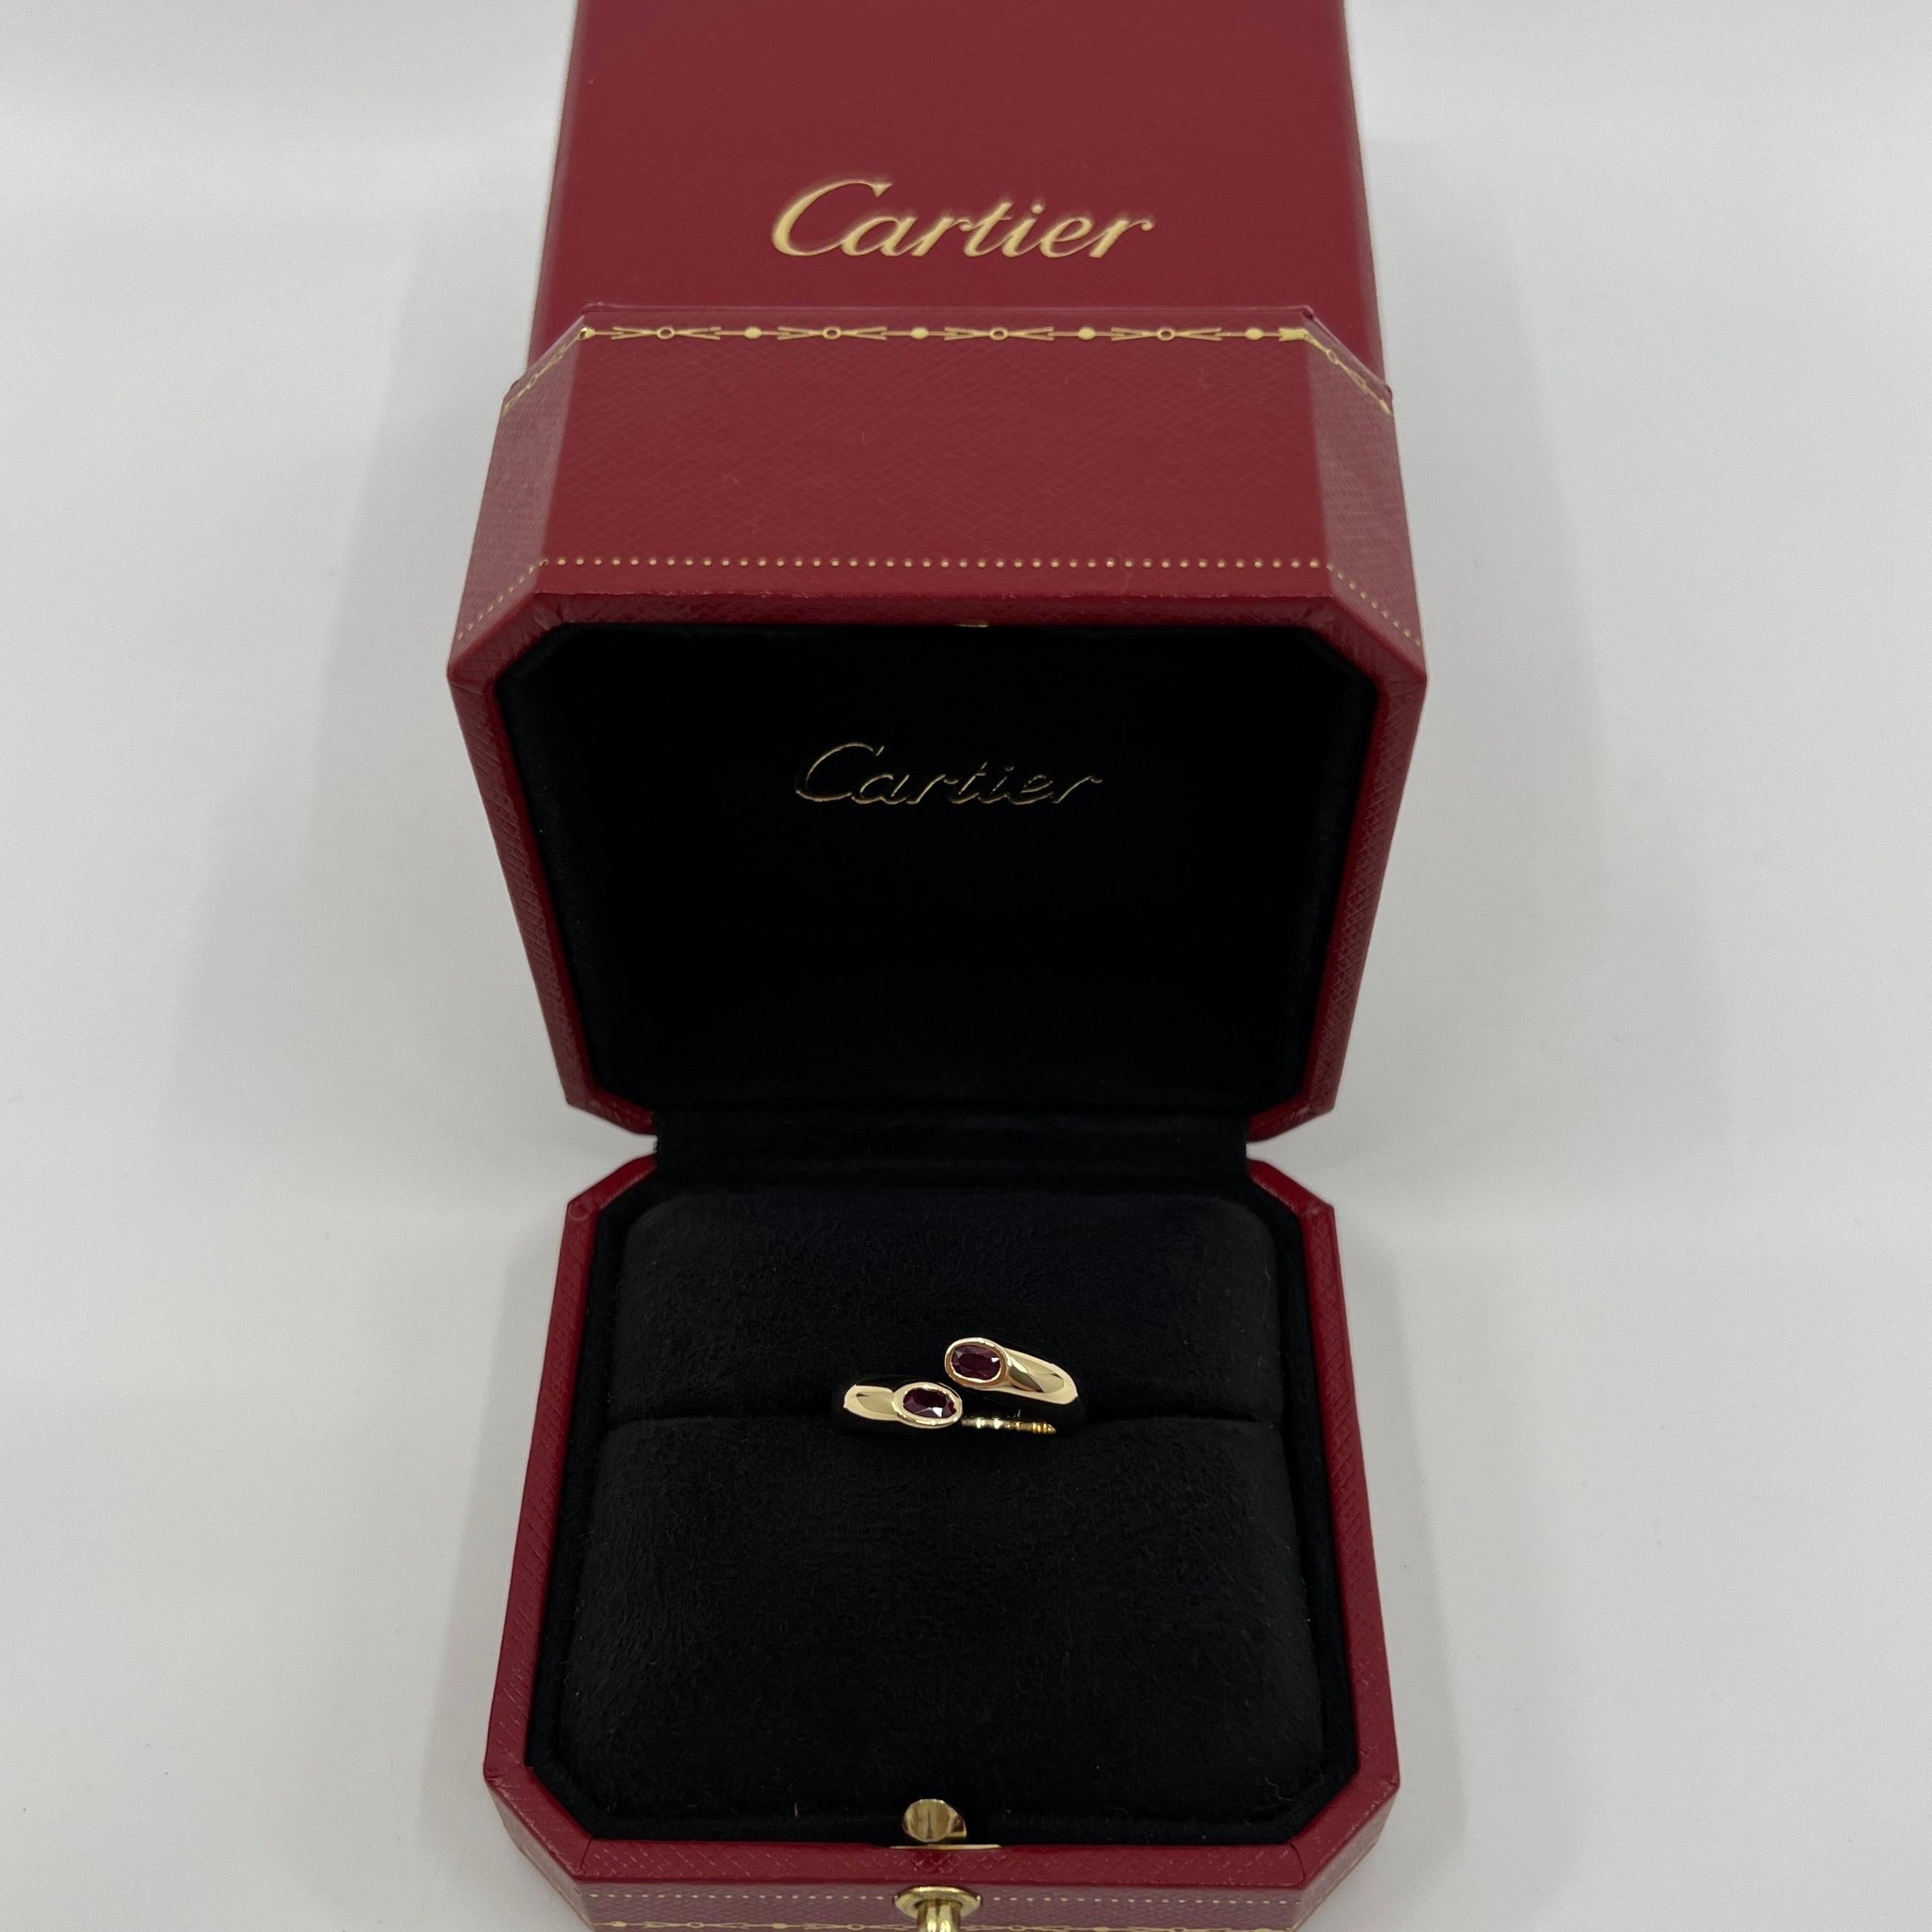 Vintage Cartier Oval Cut Red Ruby 18k Gelbgold Split Bypass Ring.

Atemberaubender Ring aus Gelbgold, besetzt mit 2 feinen, leuchtend roten Rubinen im Ovalschliff. Edle Schmuckhäuser wie Cartier verwenden nur die feinsten Edelsteine, und diese